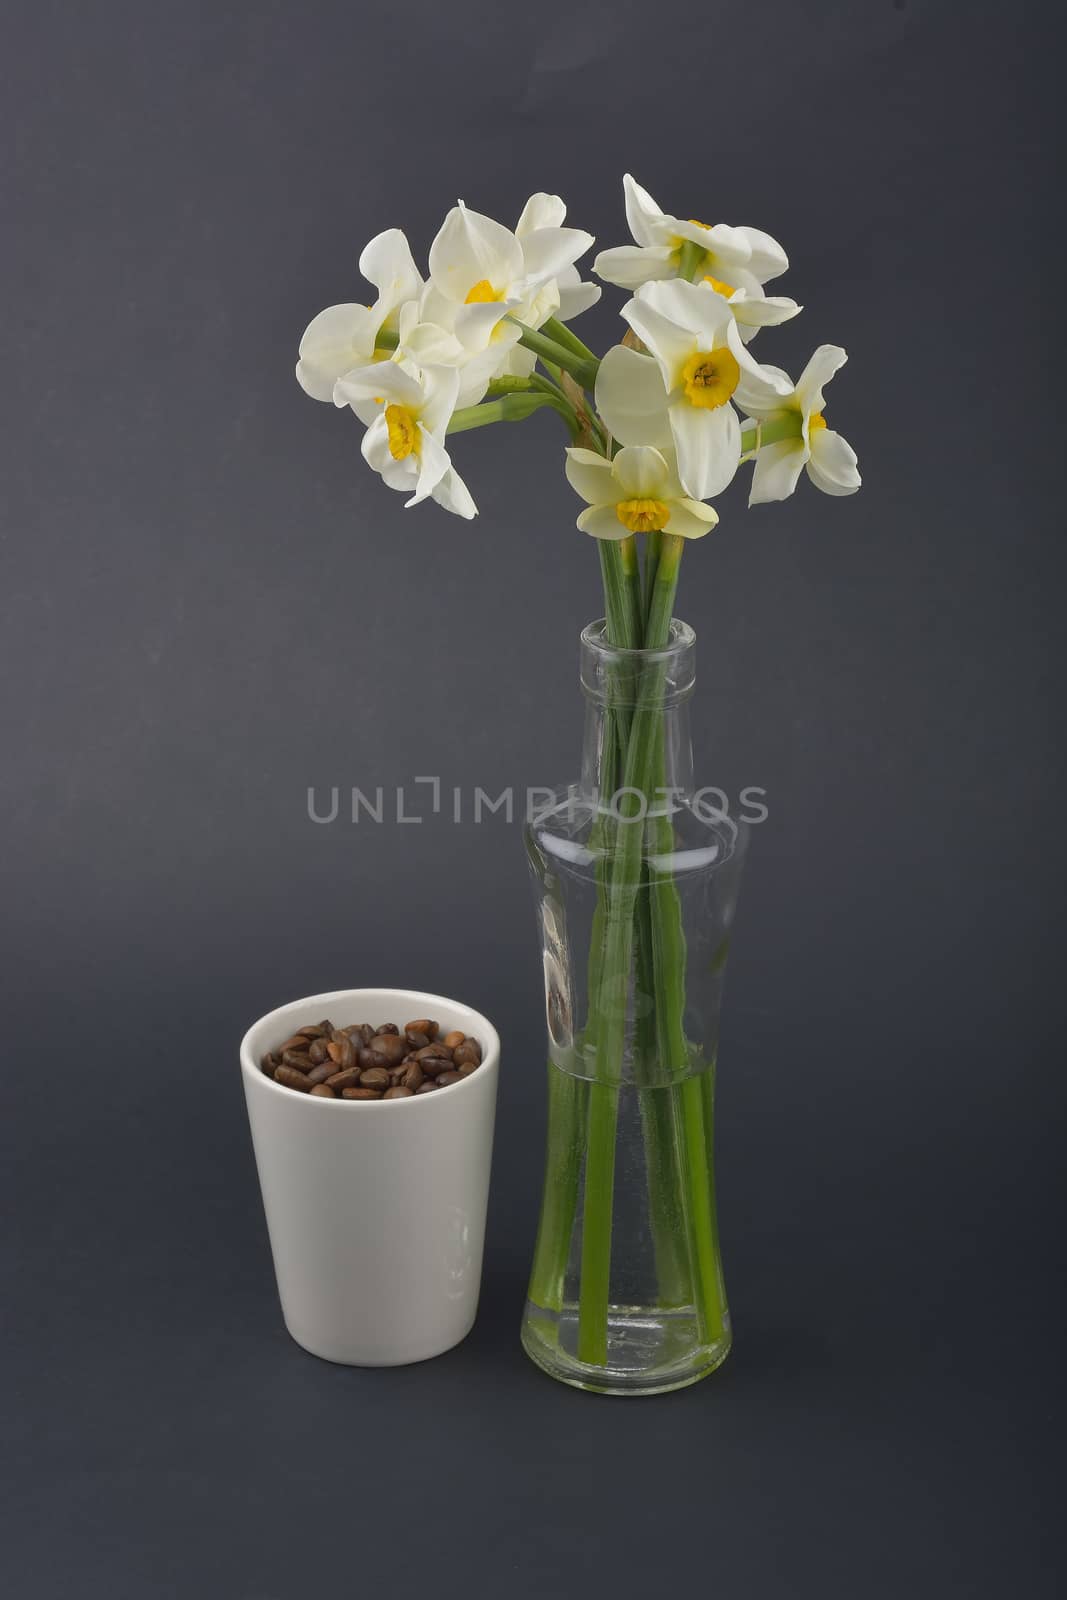 Daffodil flower by constantinhurghea